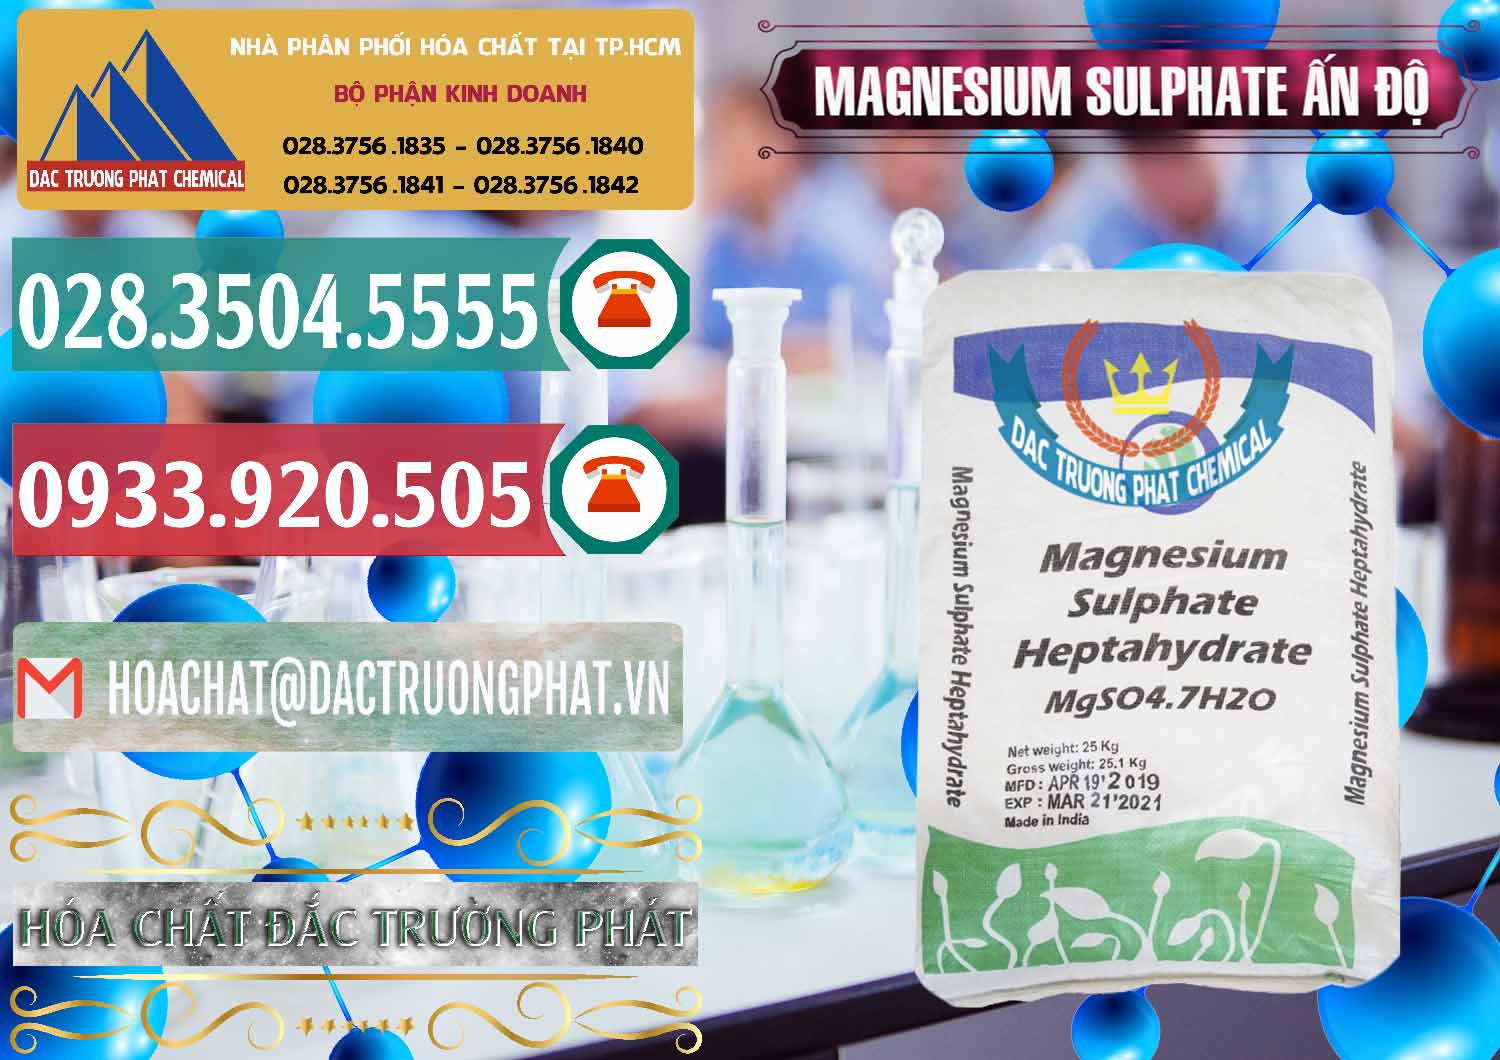 Cty phân phối - bán MGSO4.7H2O – Magnesium Sulphate Heptahydrate Ấn Độ India - 0362 - Công ty cung cấp - phân phối hóa chất tại TP.HCM - muabanhoachat.vn